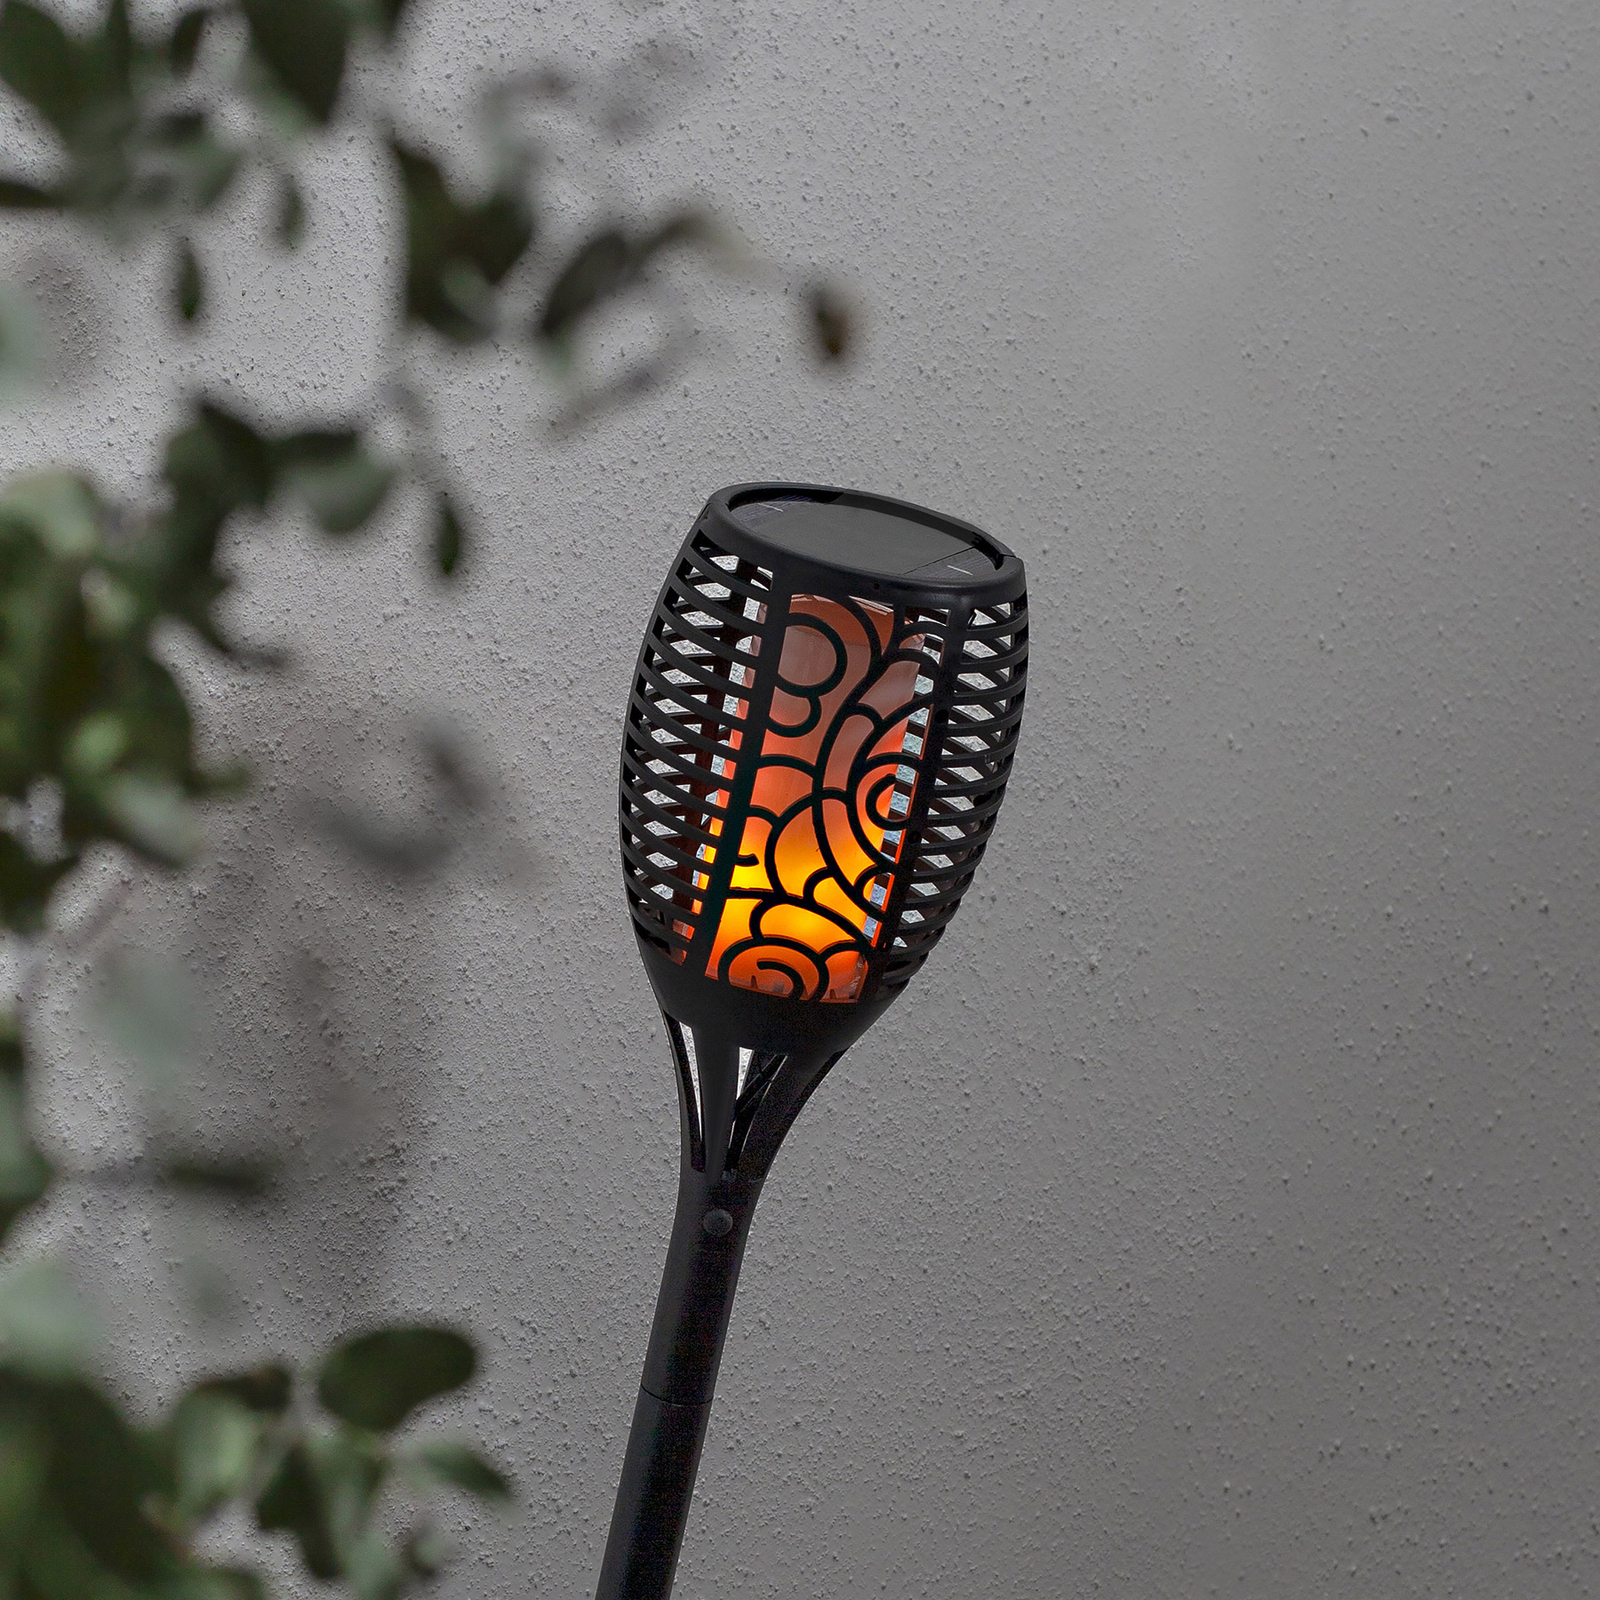 Solární lampa LED Flame, tři možnosti použití, 54 cm